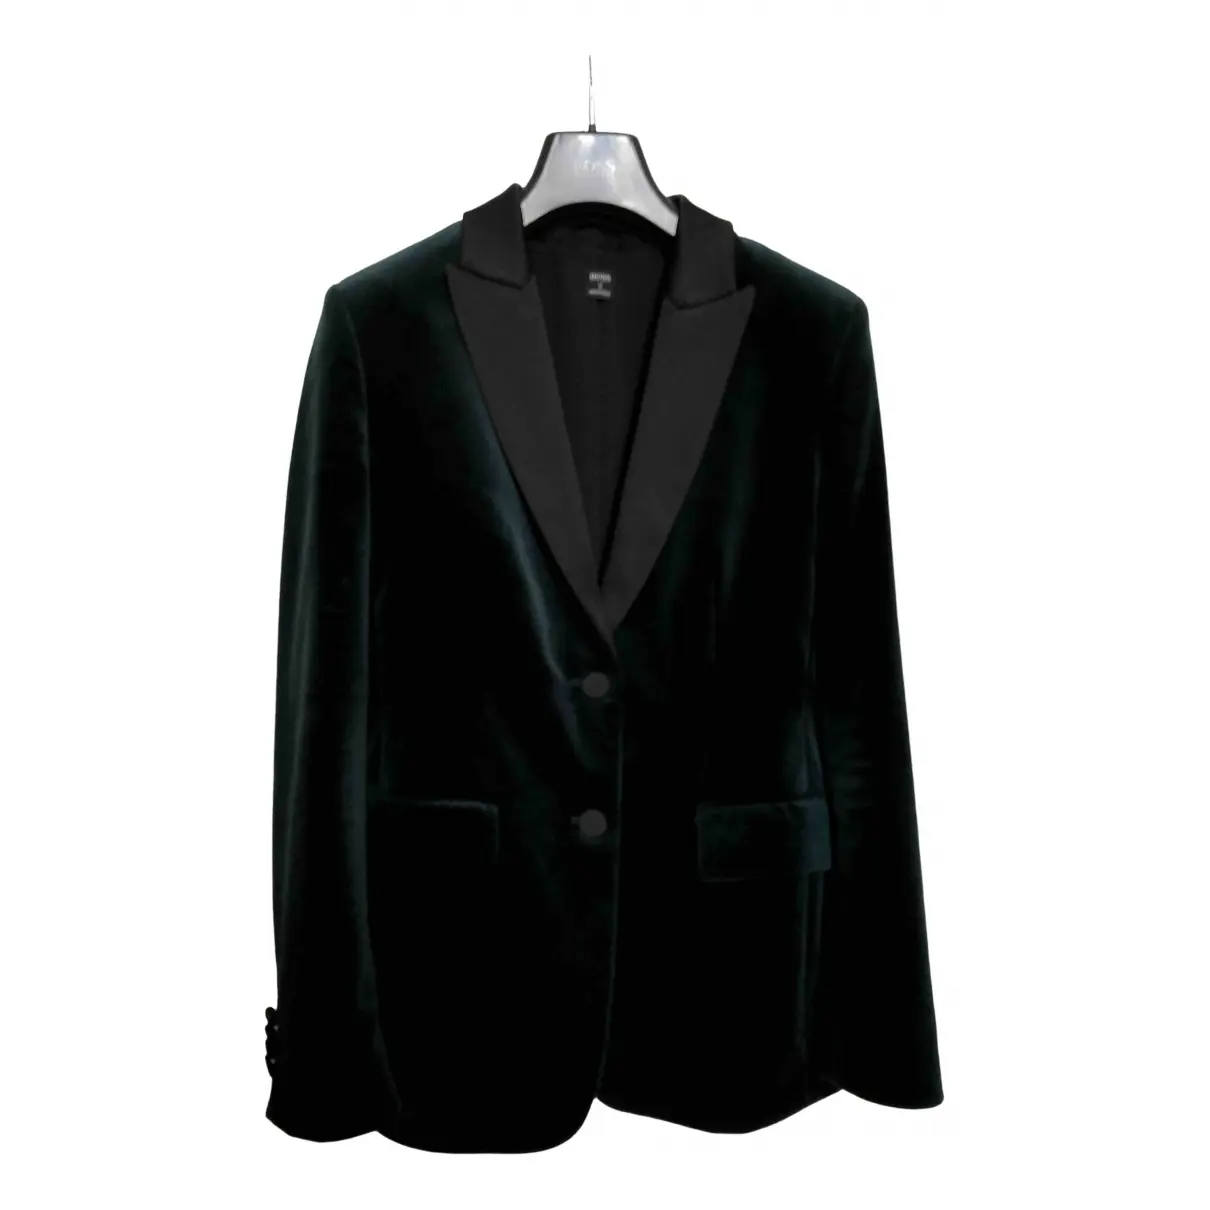 Velvet suit jacket Hugo Boss